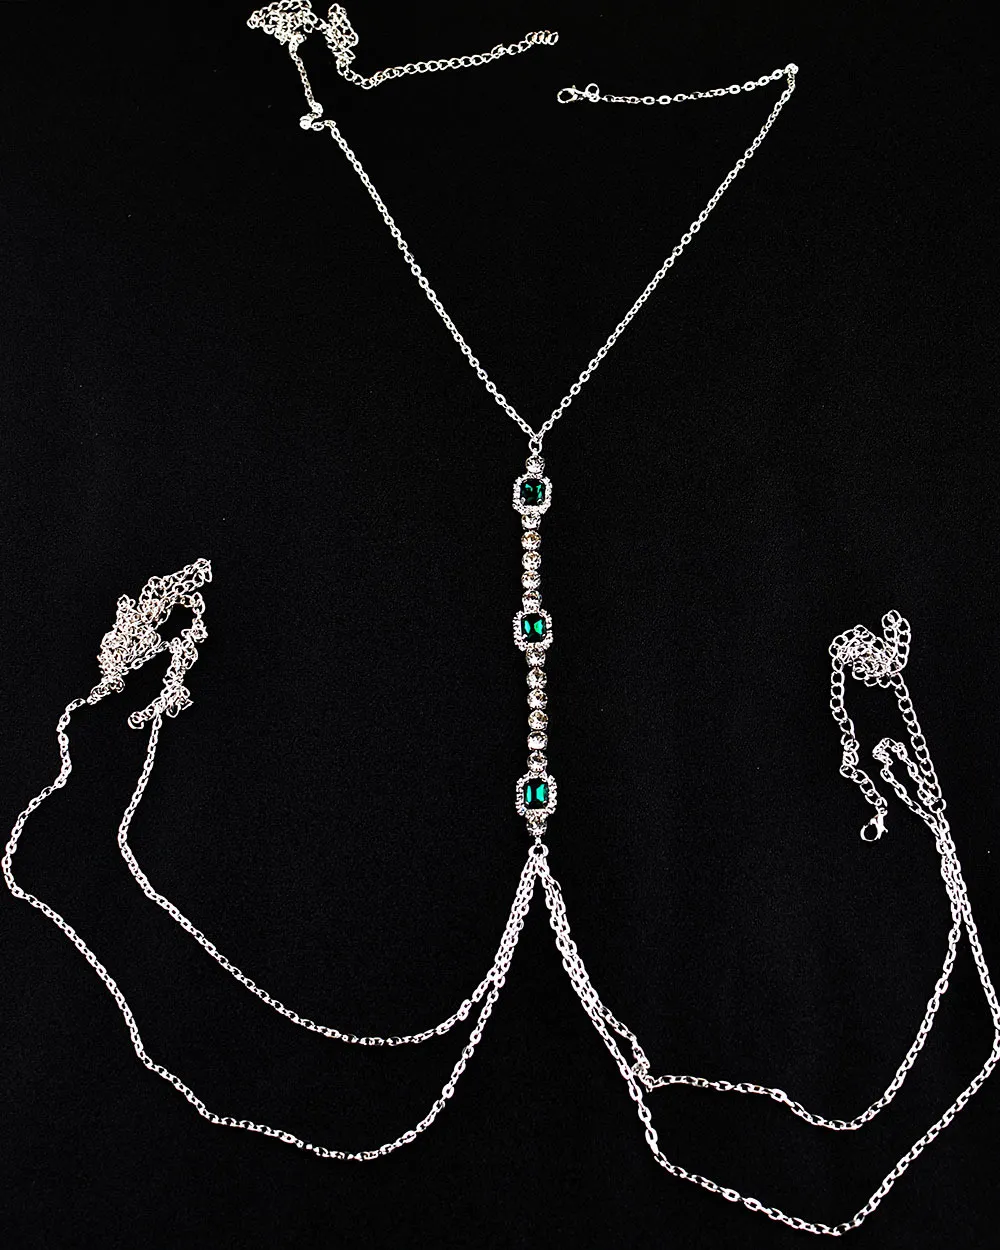 New Emerald Chest Chain Sexy and Fun Rhinestone Fashion and Advanced Body Chain Accessories